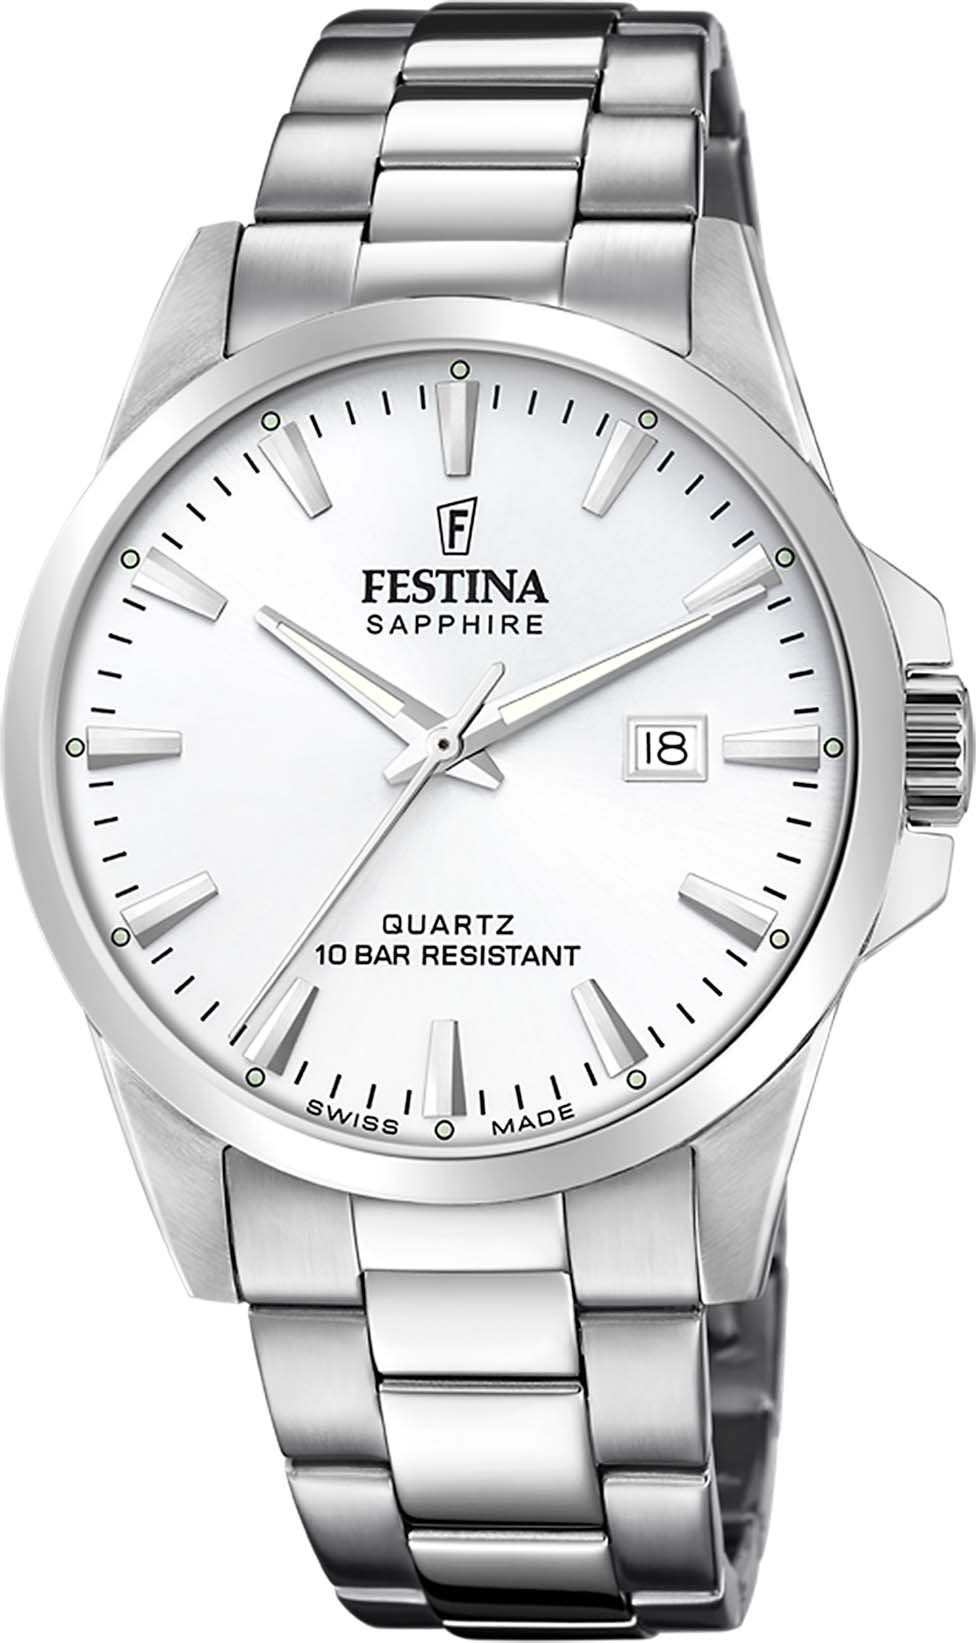 Swiss Made, Uhr F20024/2 Festina Schweizer